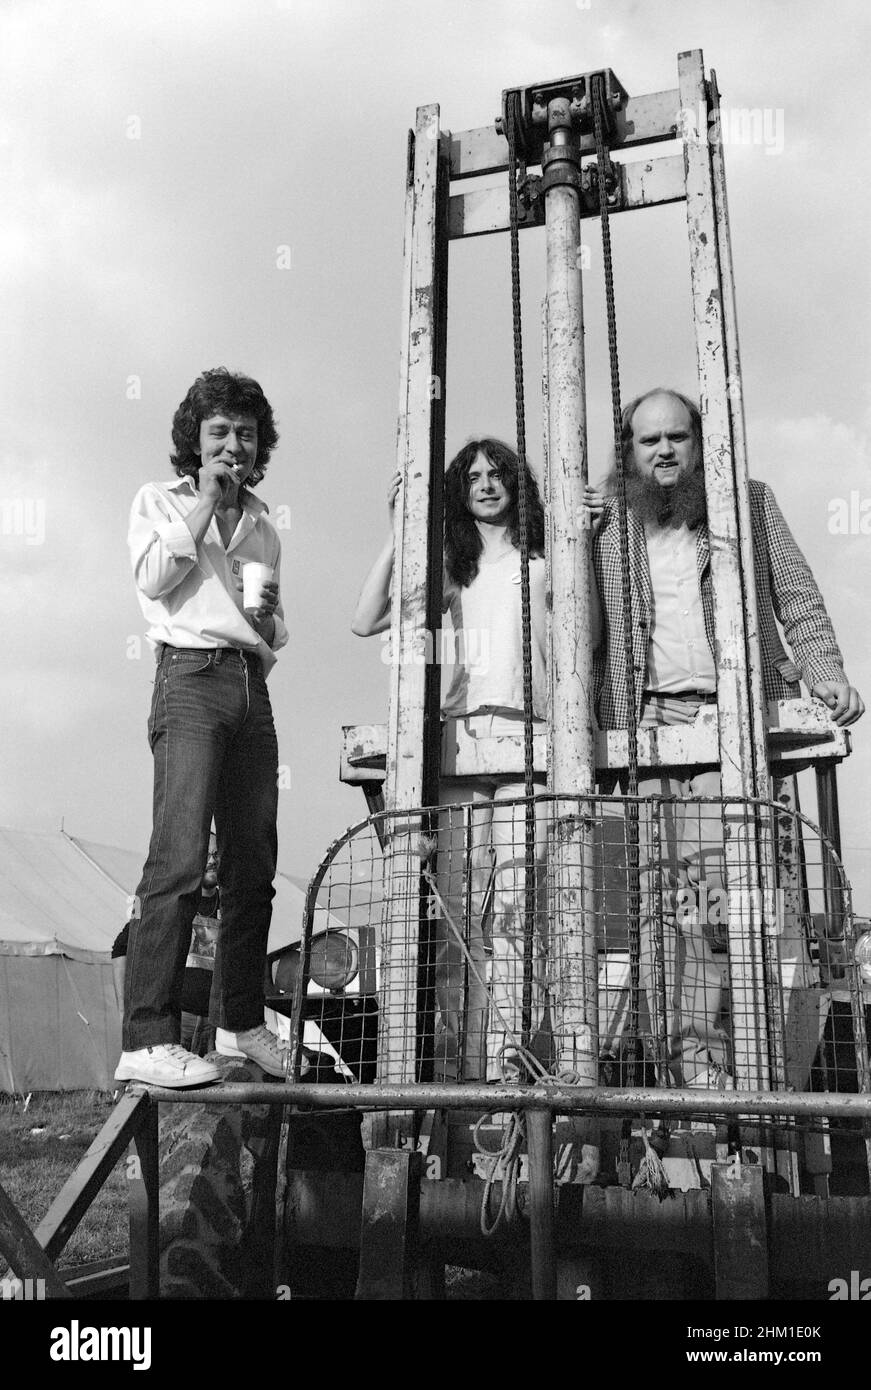 Mitglieder der Enid-Rockband Backstage beim Reading Festival 1982, England. Stockfoto